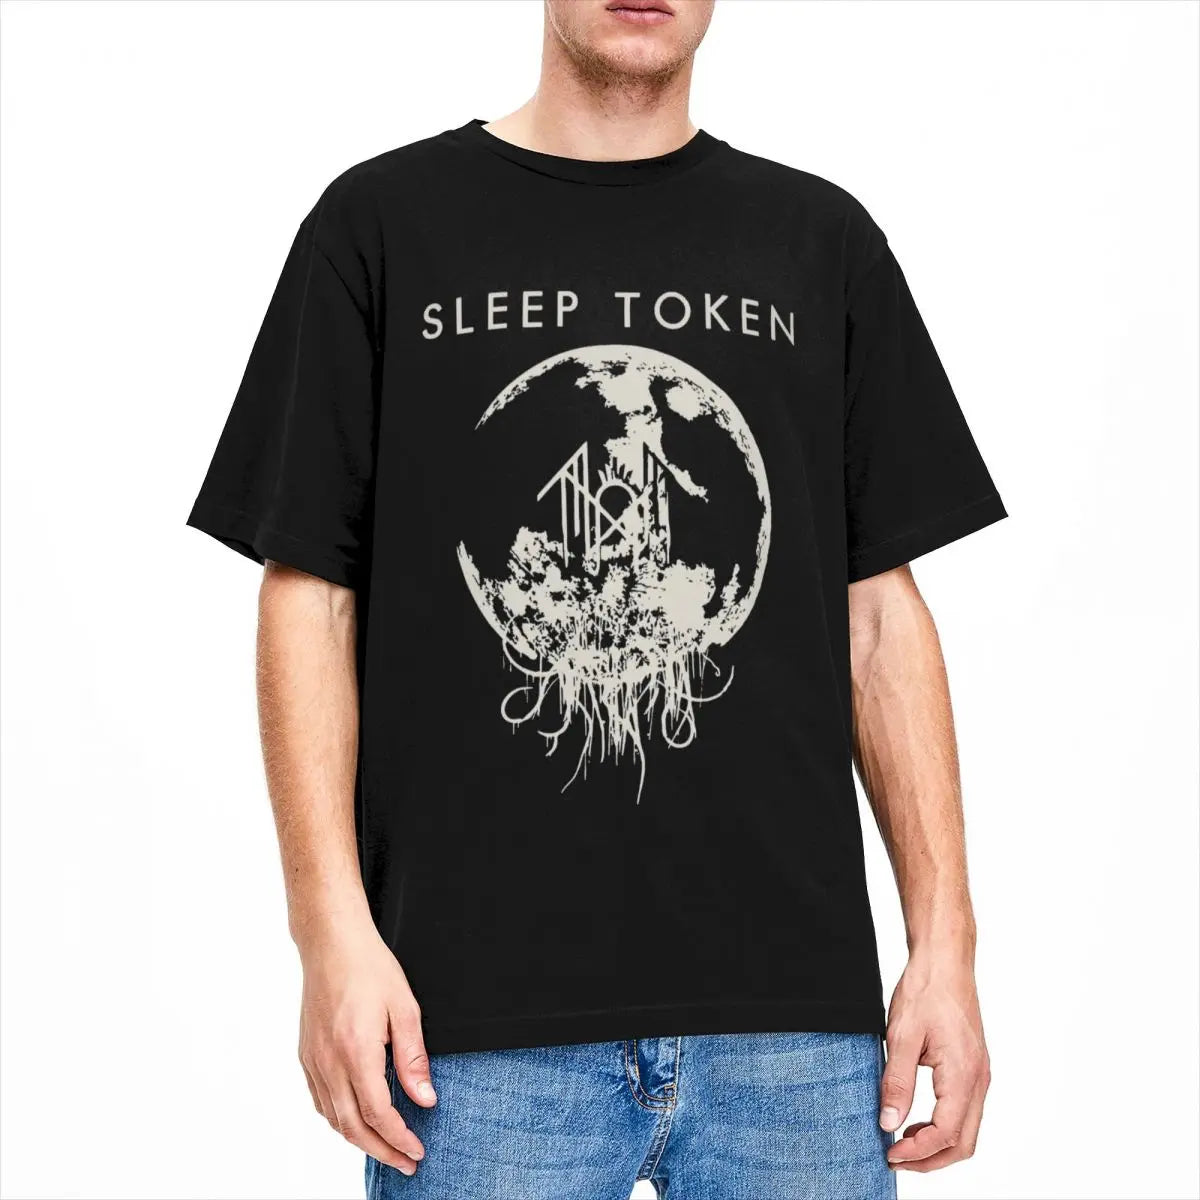 Sleep Token Metal Band Shirt - Vintage Cotton Rock Music Tee for Men & Women